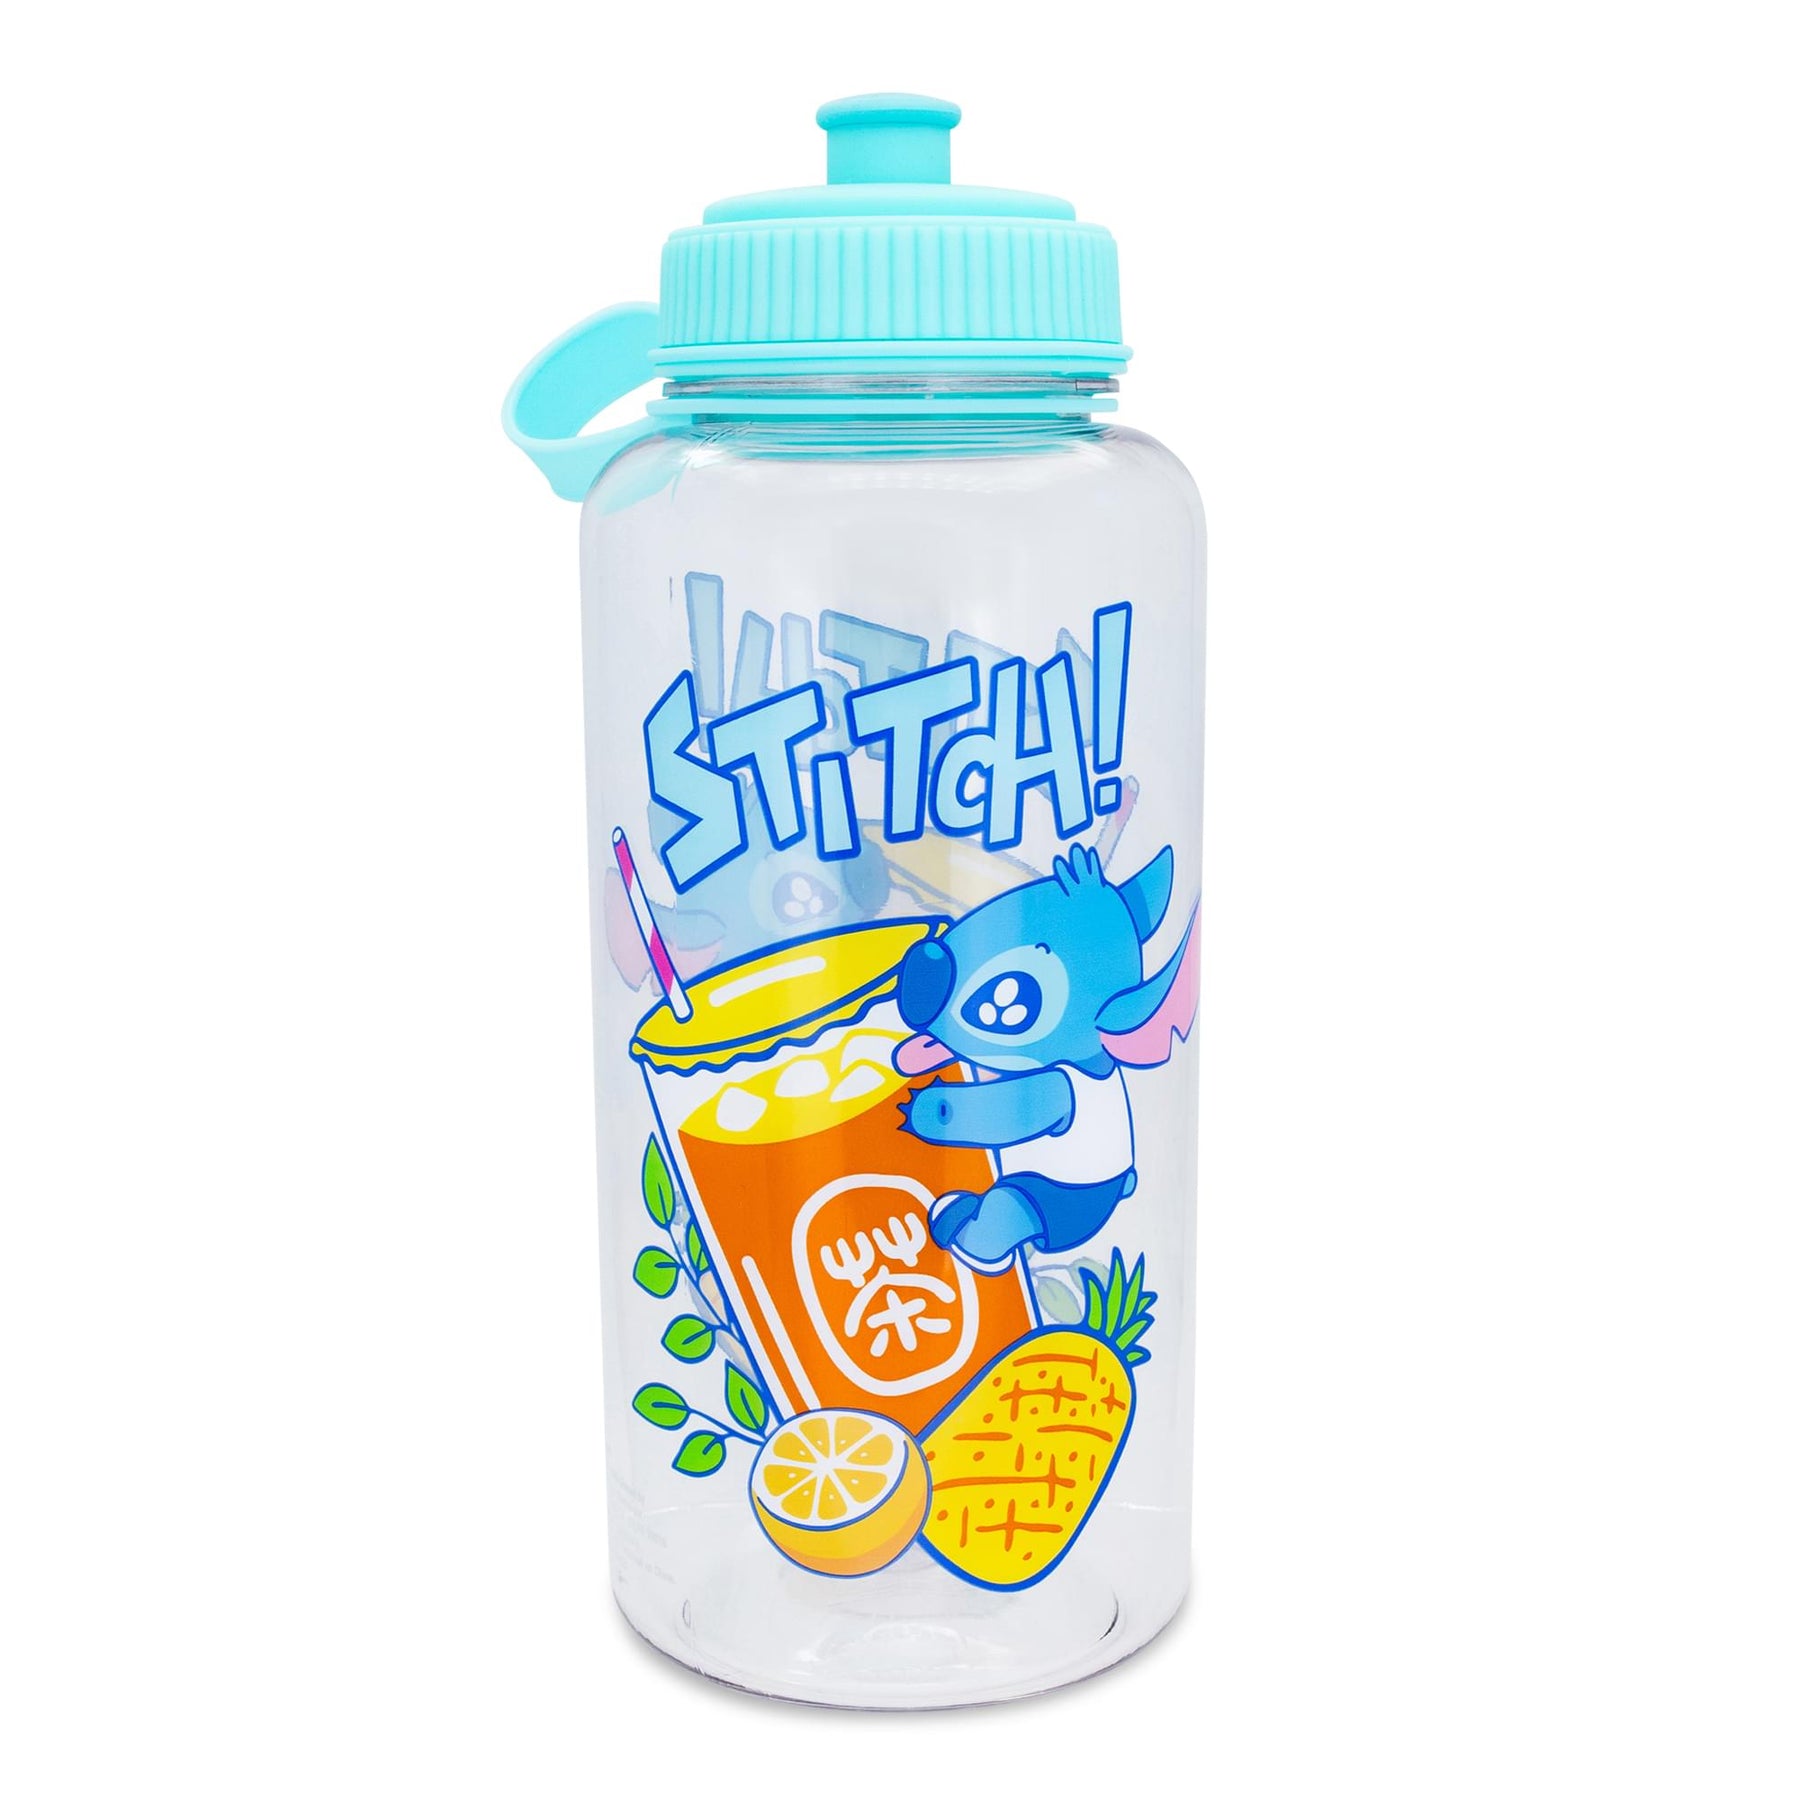 Stitch Water Bottle 